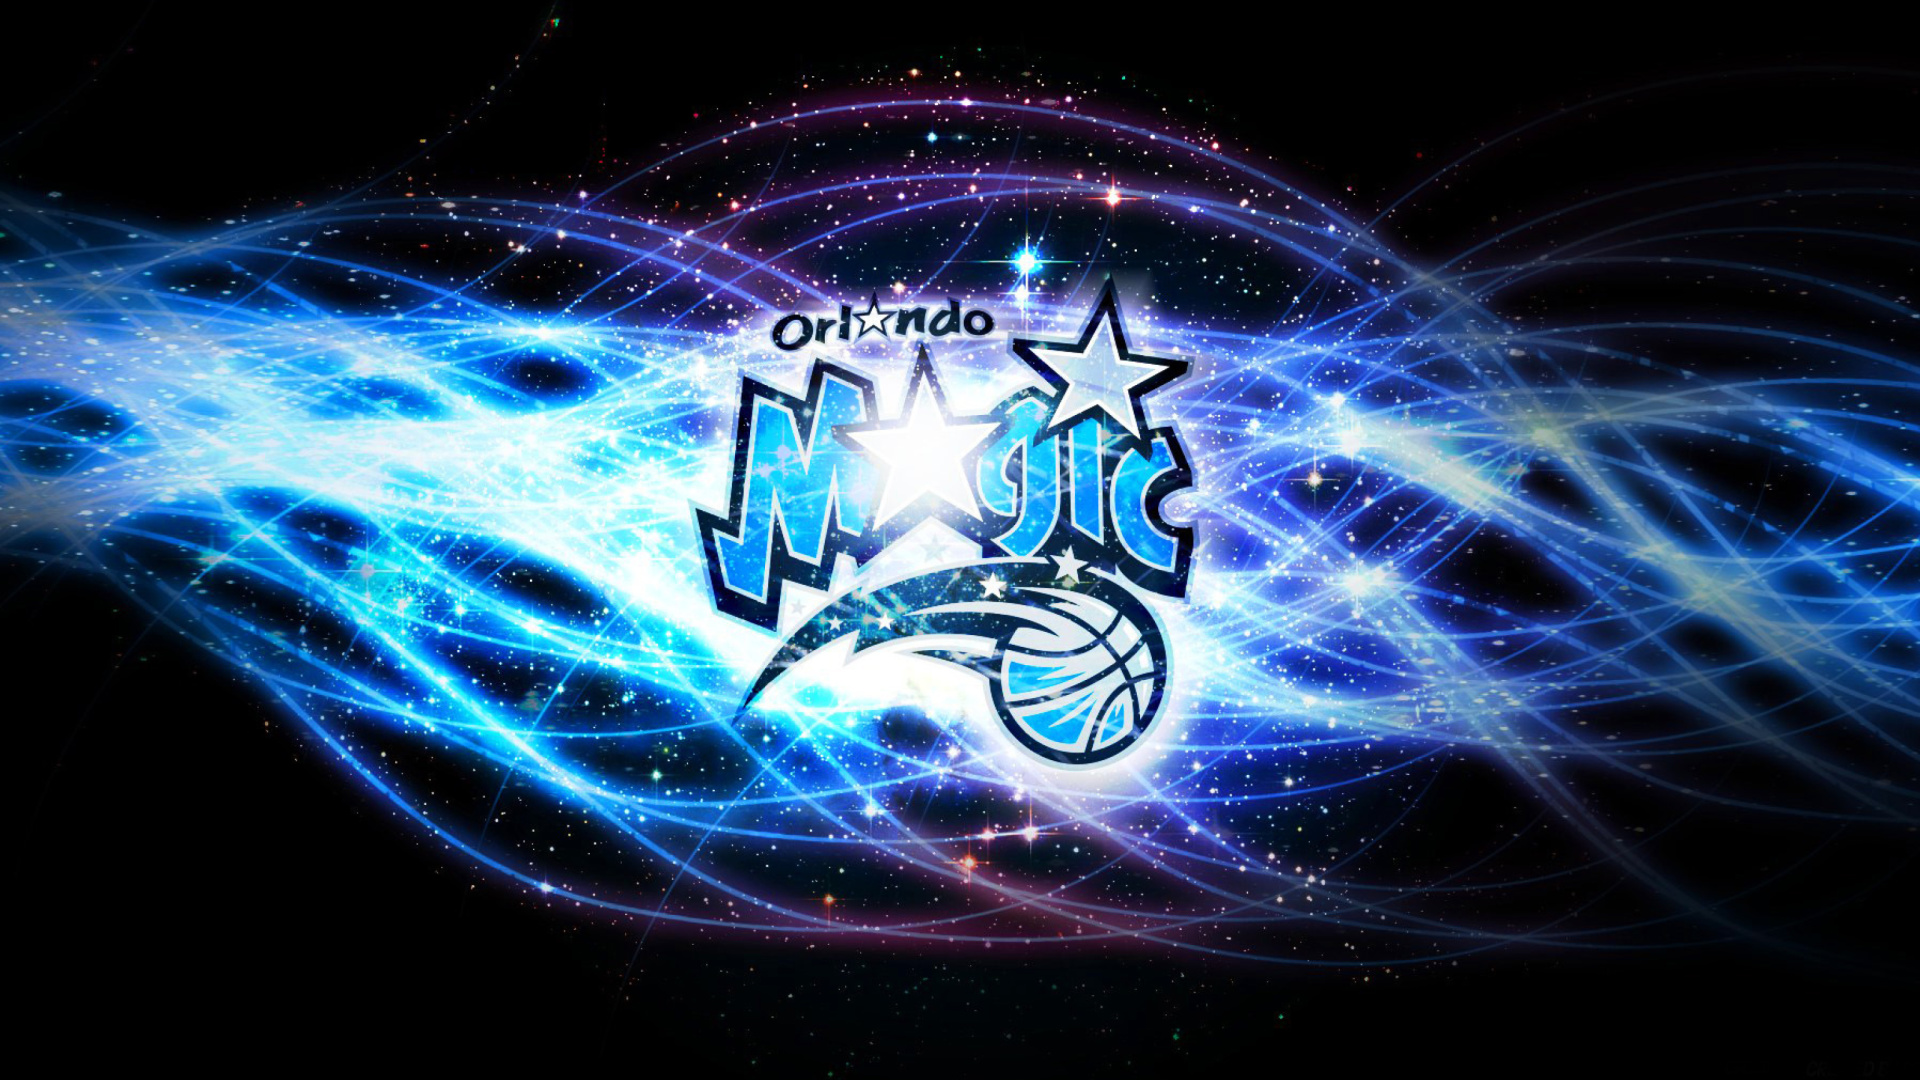 Sfondi Orlando Magic, Southeast Division 1920x1080